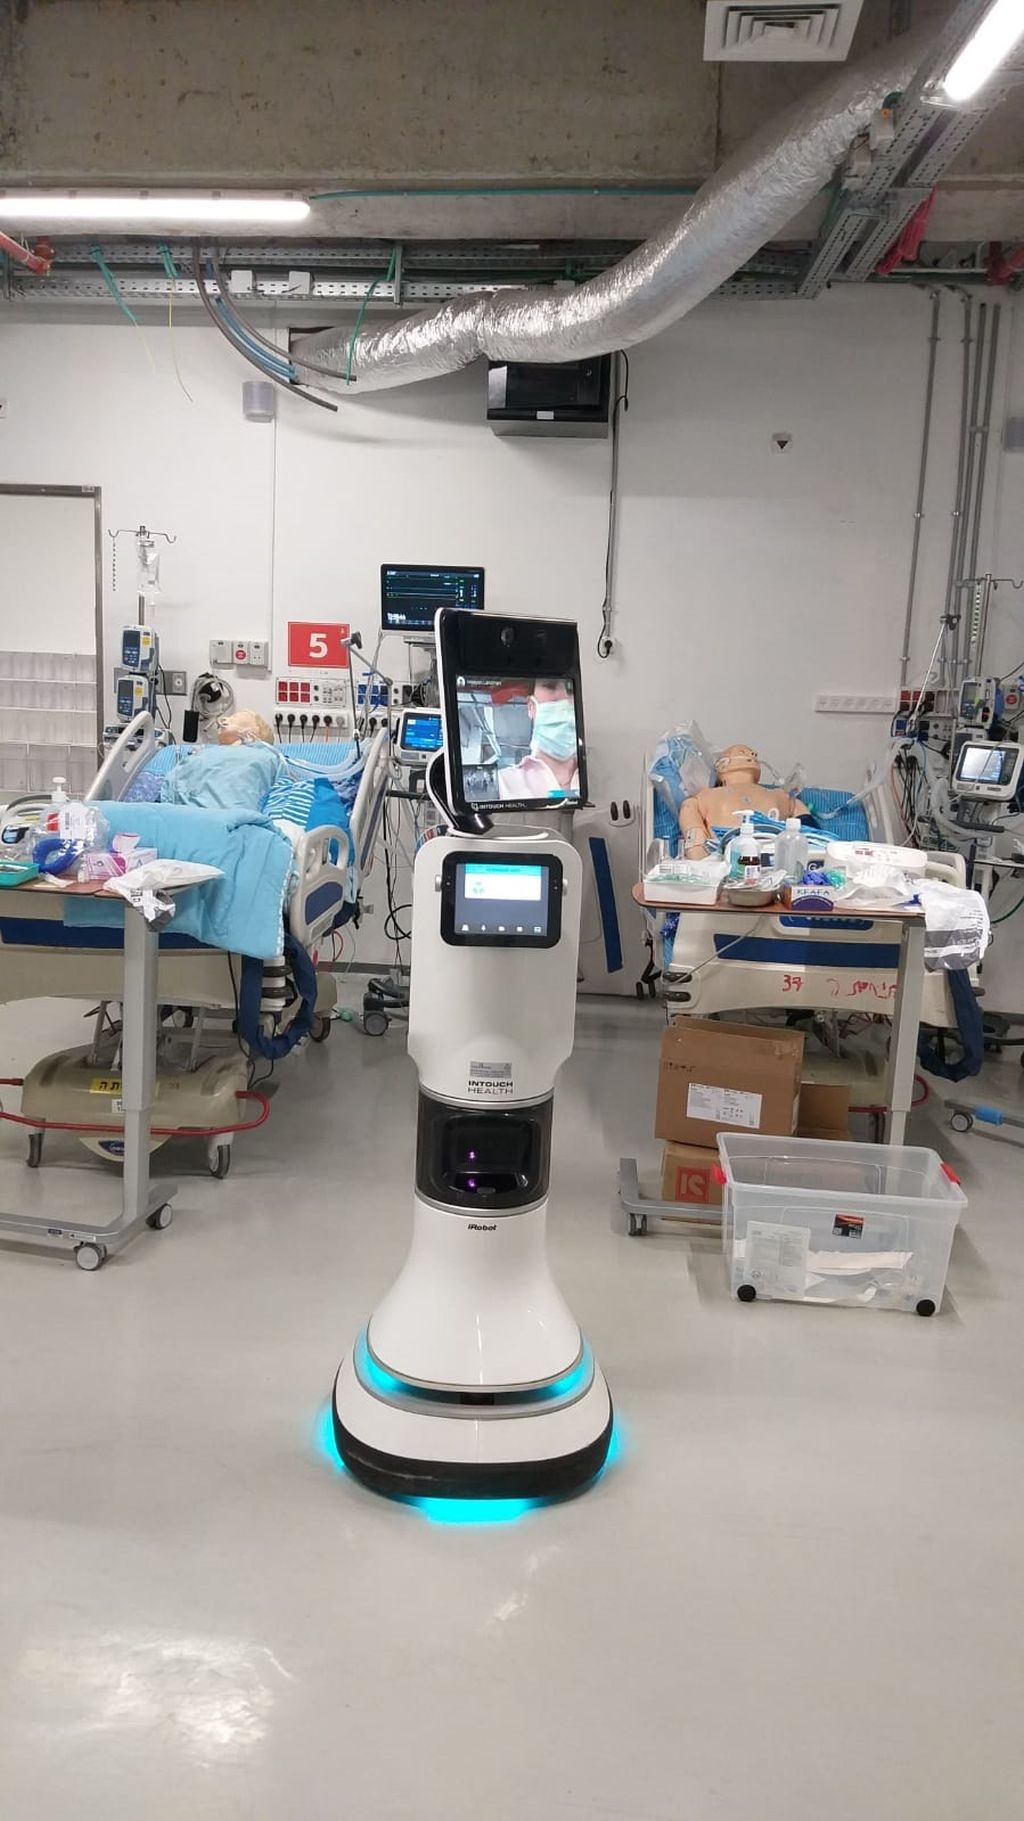 Tecnología de avanzada: el robo de la unidad de cuidados intensivos